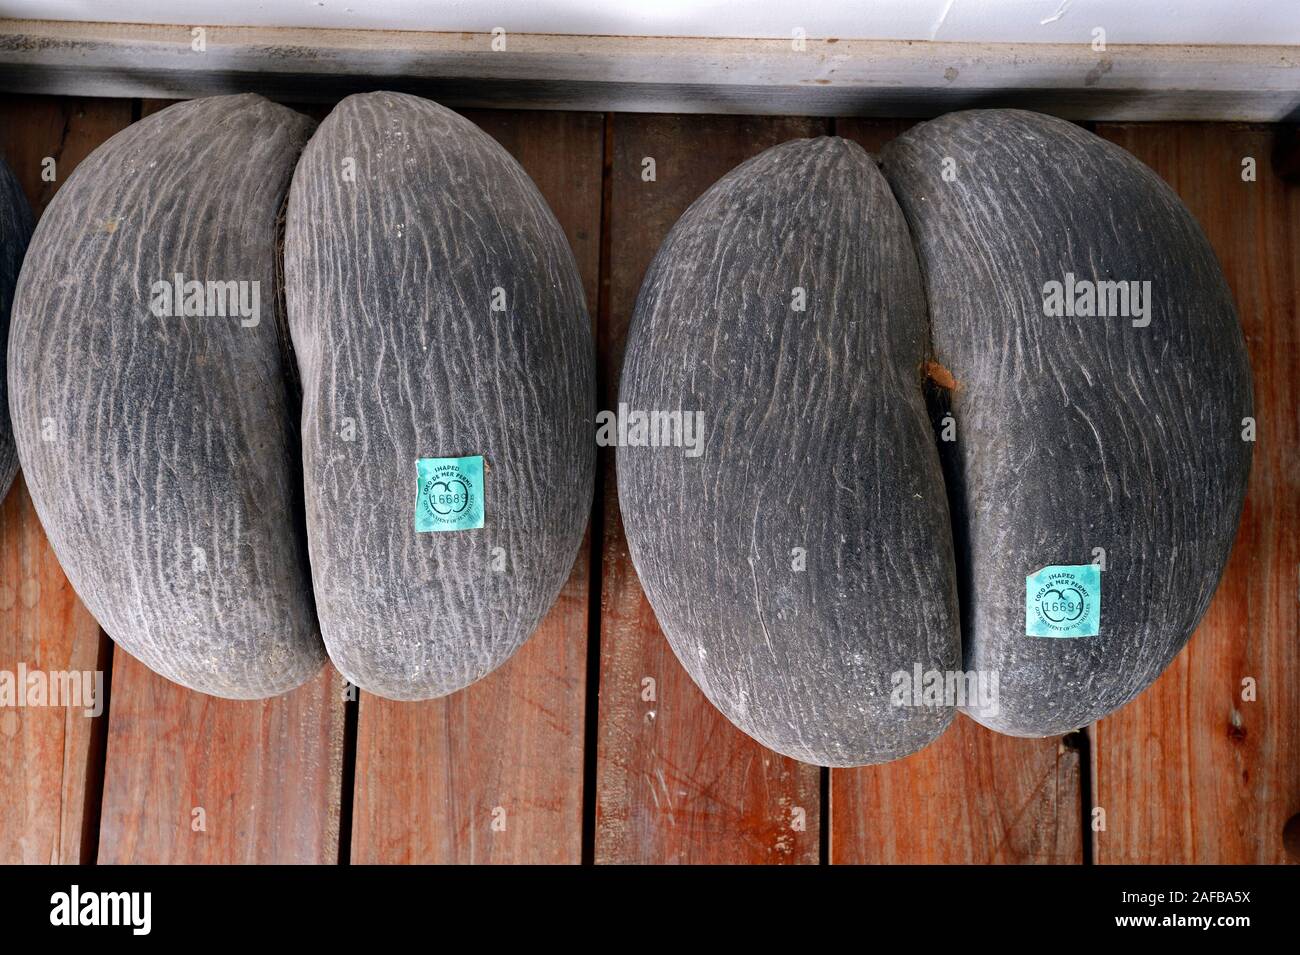 Coco de Mer, Frucht der Seychellenpalme (Lodoicea maldivica), größter Samen der Erde, für den Verkauf lizensierte Exmplare, Insel Mahe, Seychellen Stockfoto